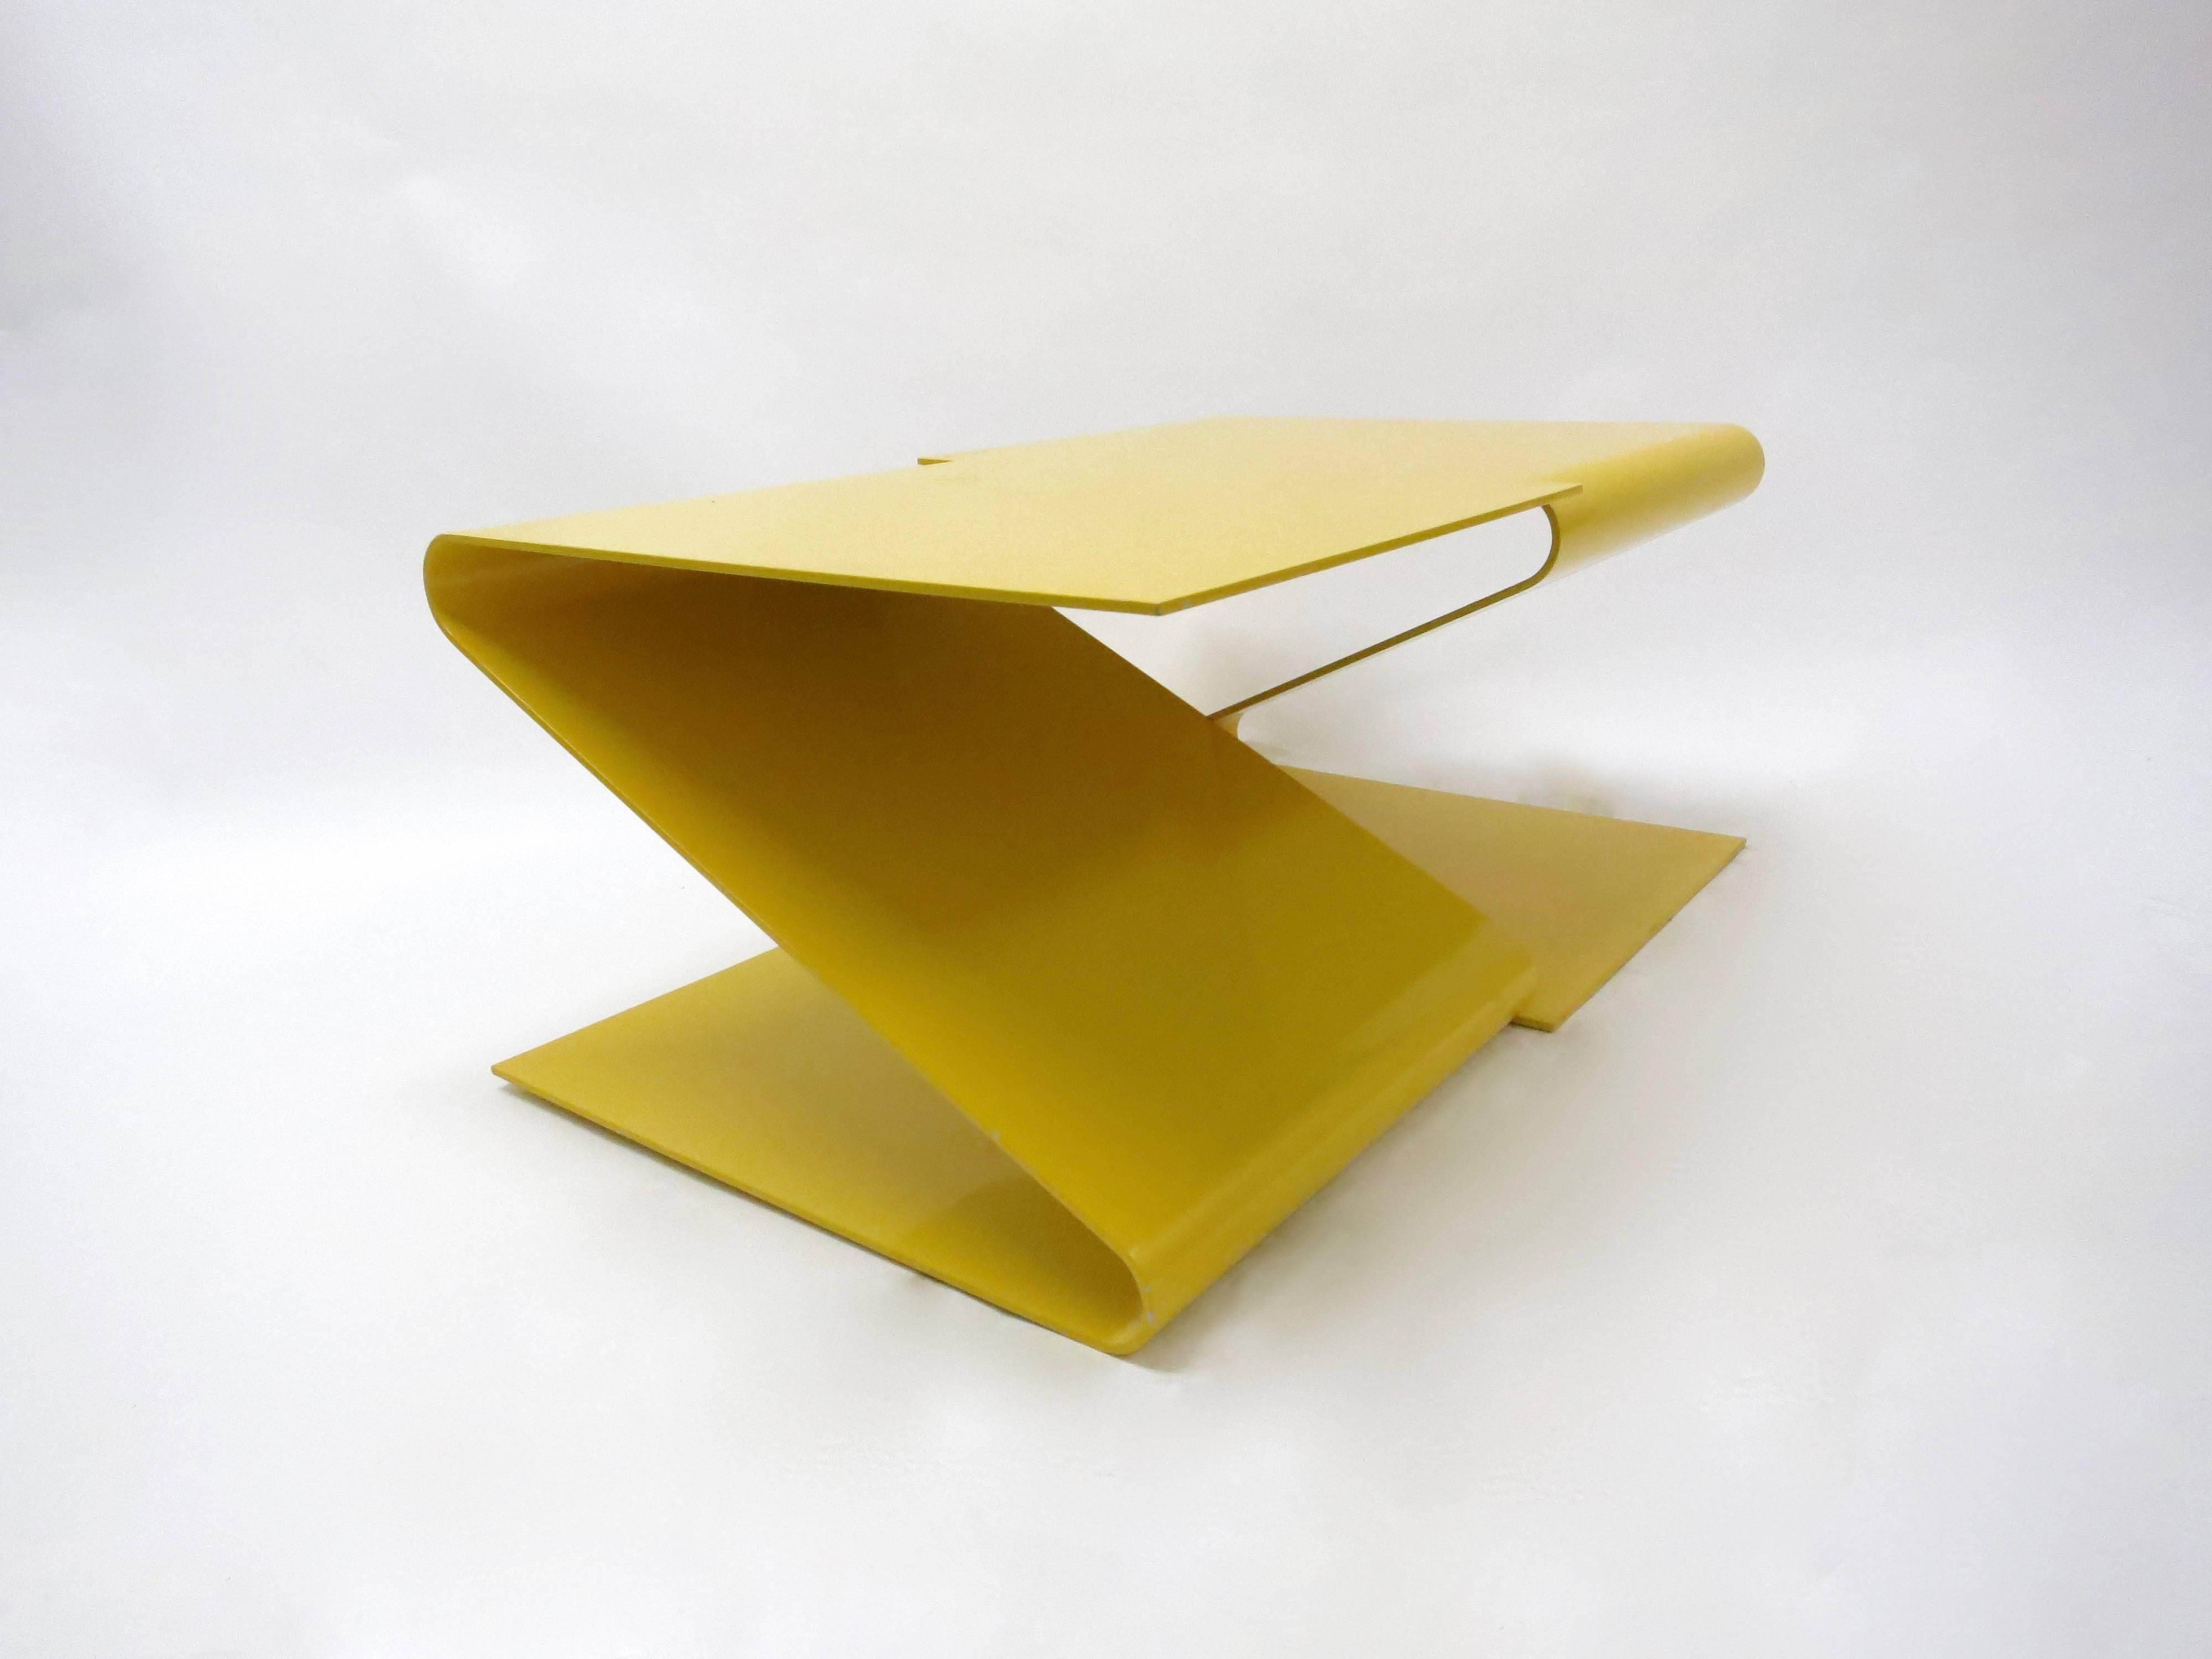 Der von L.E.FT Architects entworfene geometrische Couchtisch oder Cocktailtisch besteht aus einem Stück geschnittenen und gebogenen, gelb emaillierten Stahl mit zwei sich spiegelnden, Z-förmigen Segmenten mit abgerundeten Kurven und geraden,